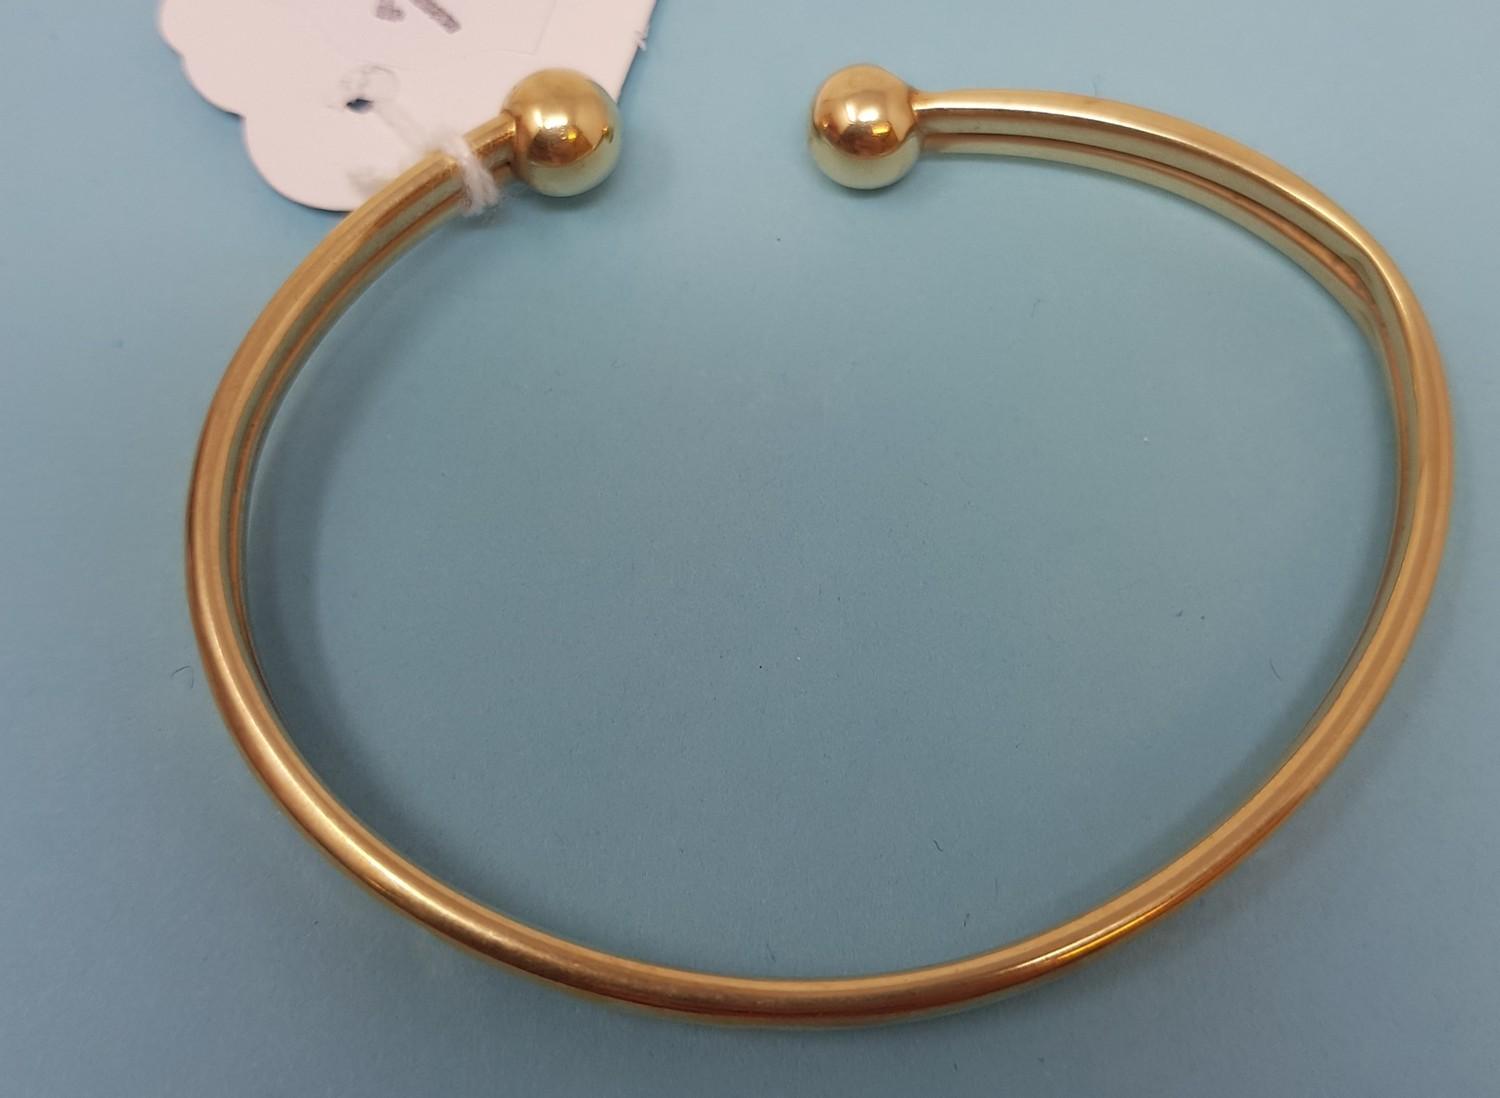 A 9ct gold bangle, 6.8 g 68 mm x 53 mm internal diameter.